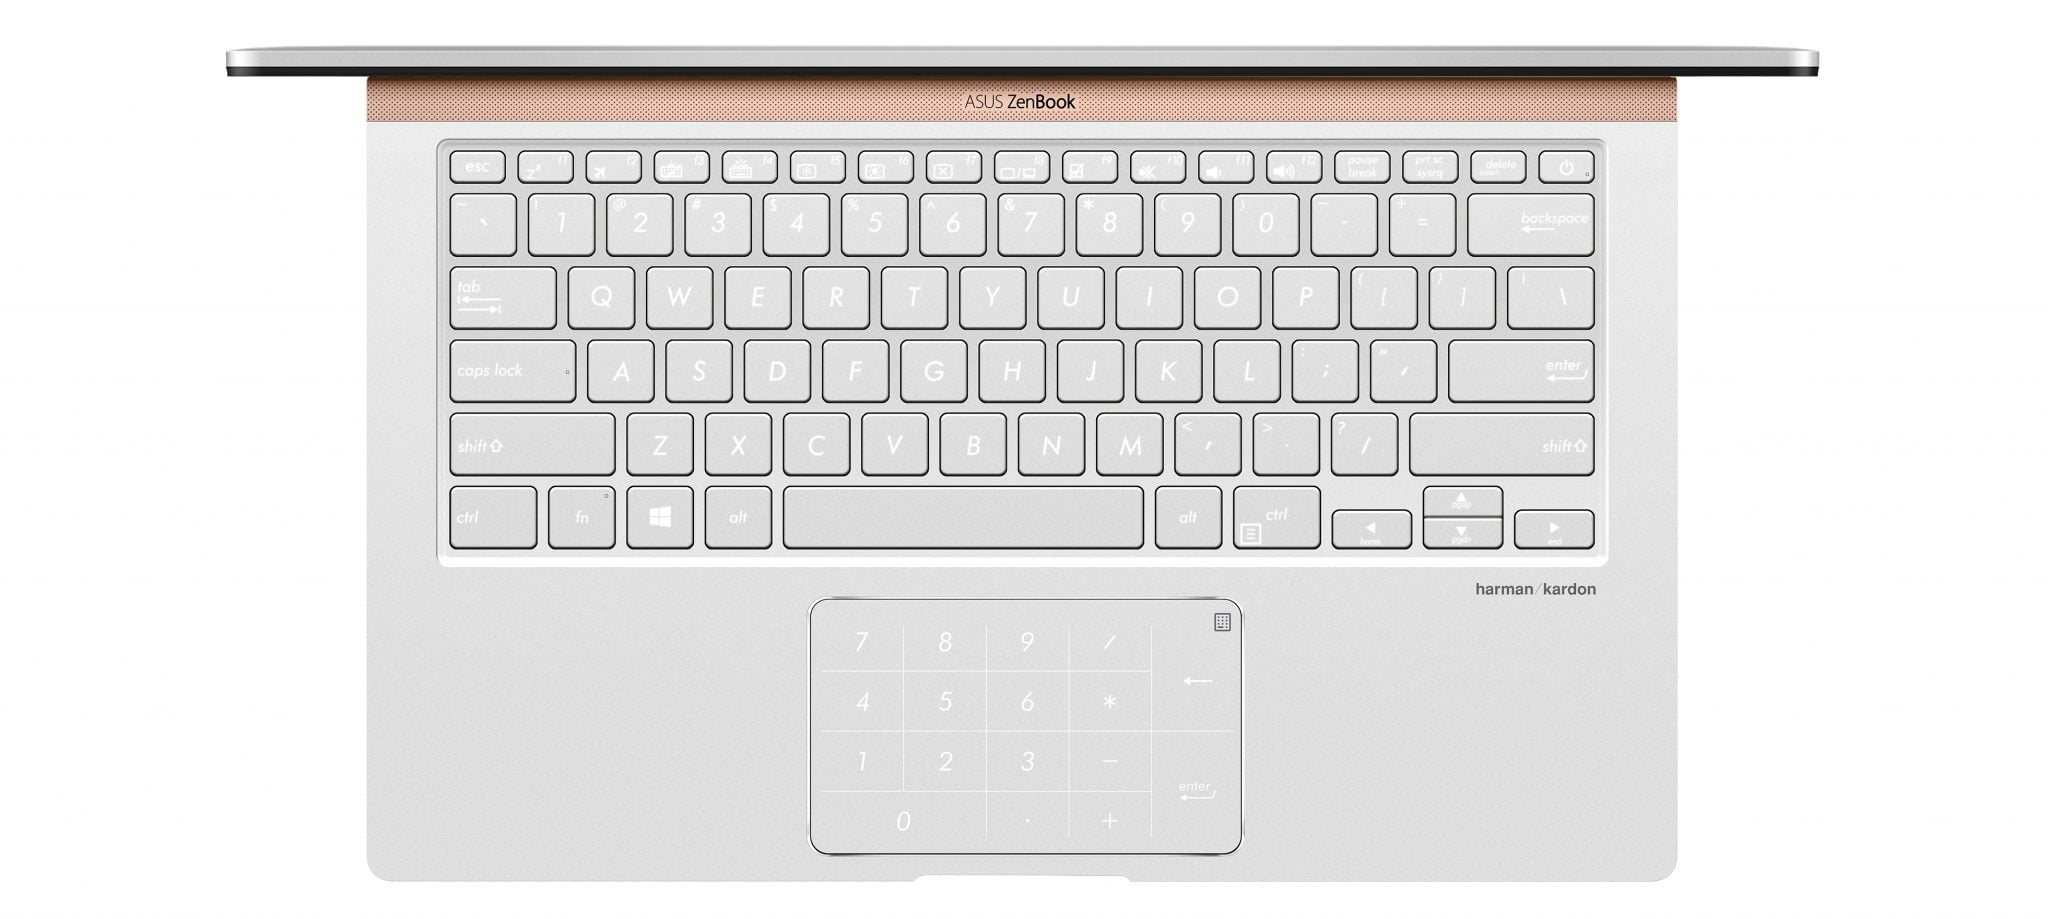 Asus ZenBook, el portátil más compacto del mundo